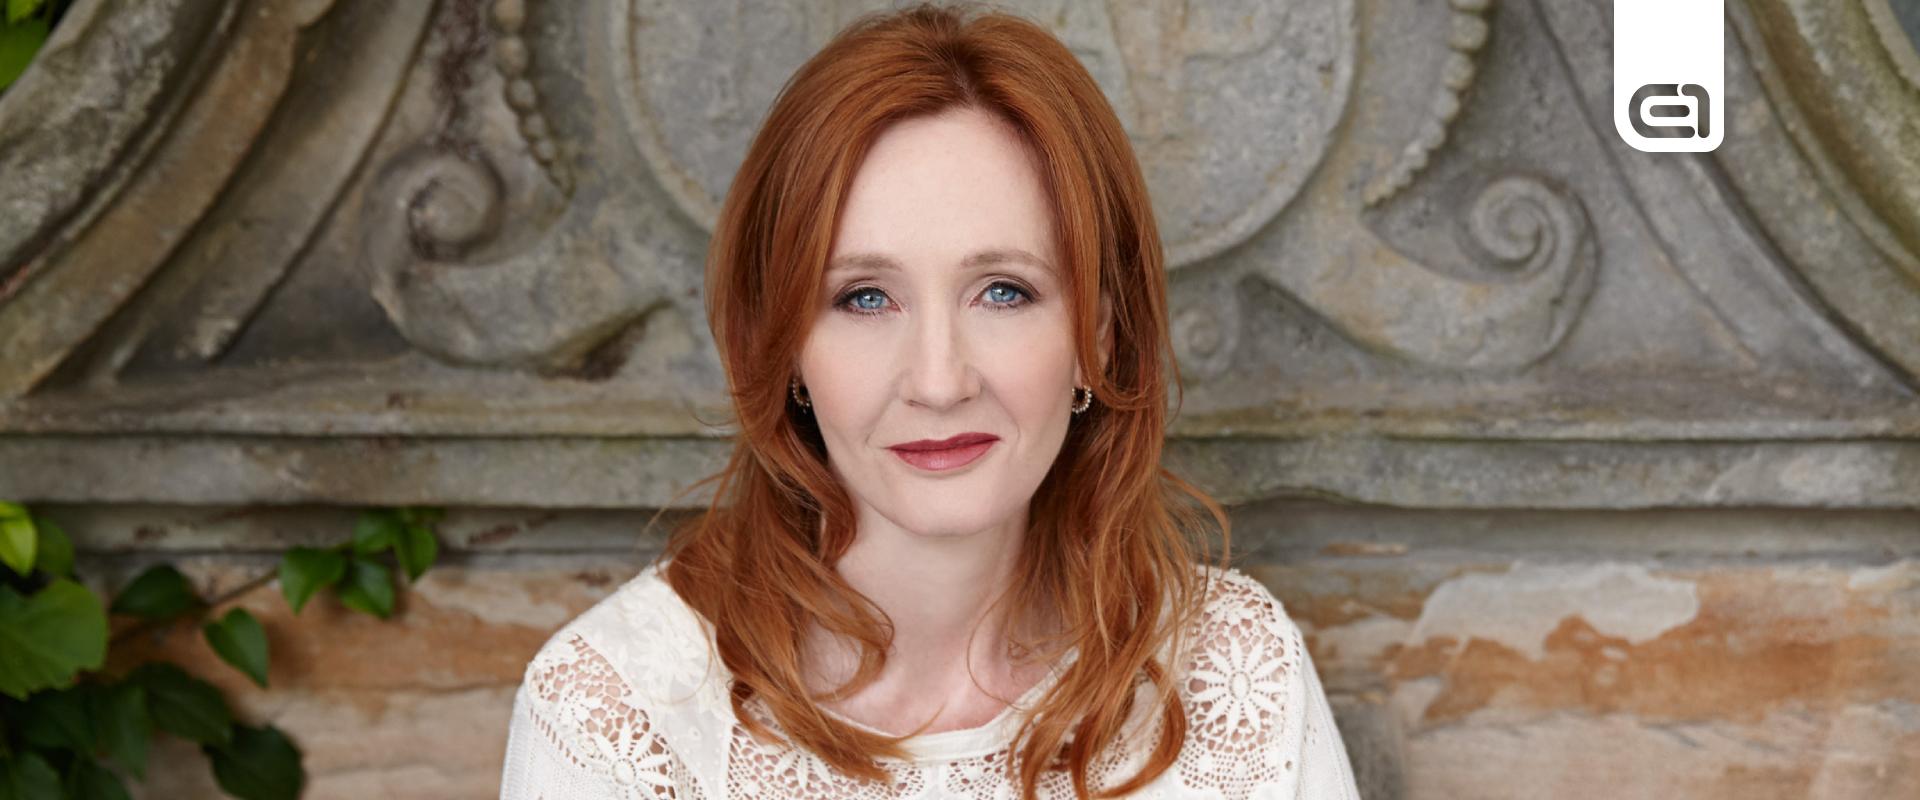 J.K. Rowling ismét kiakasztotta a transz közösséget, de a börtönt is vállalná nézetei miatt